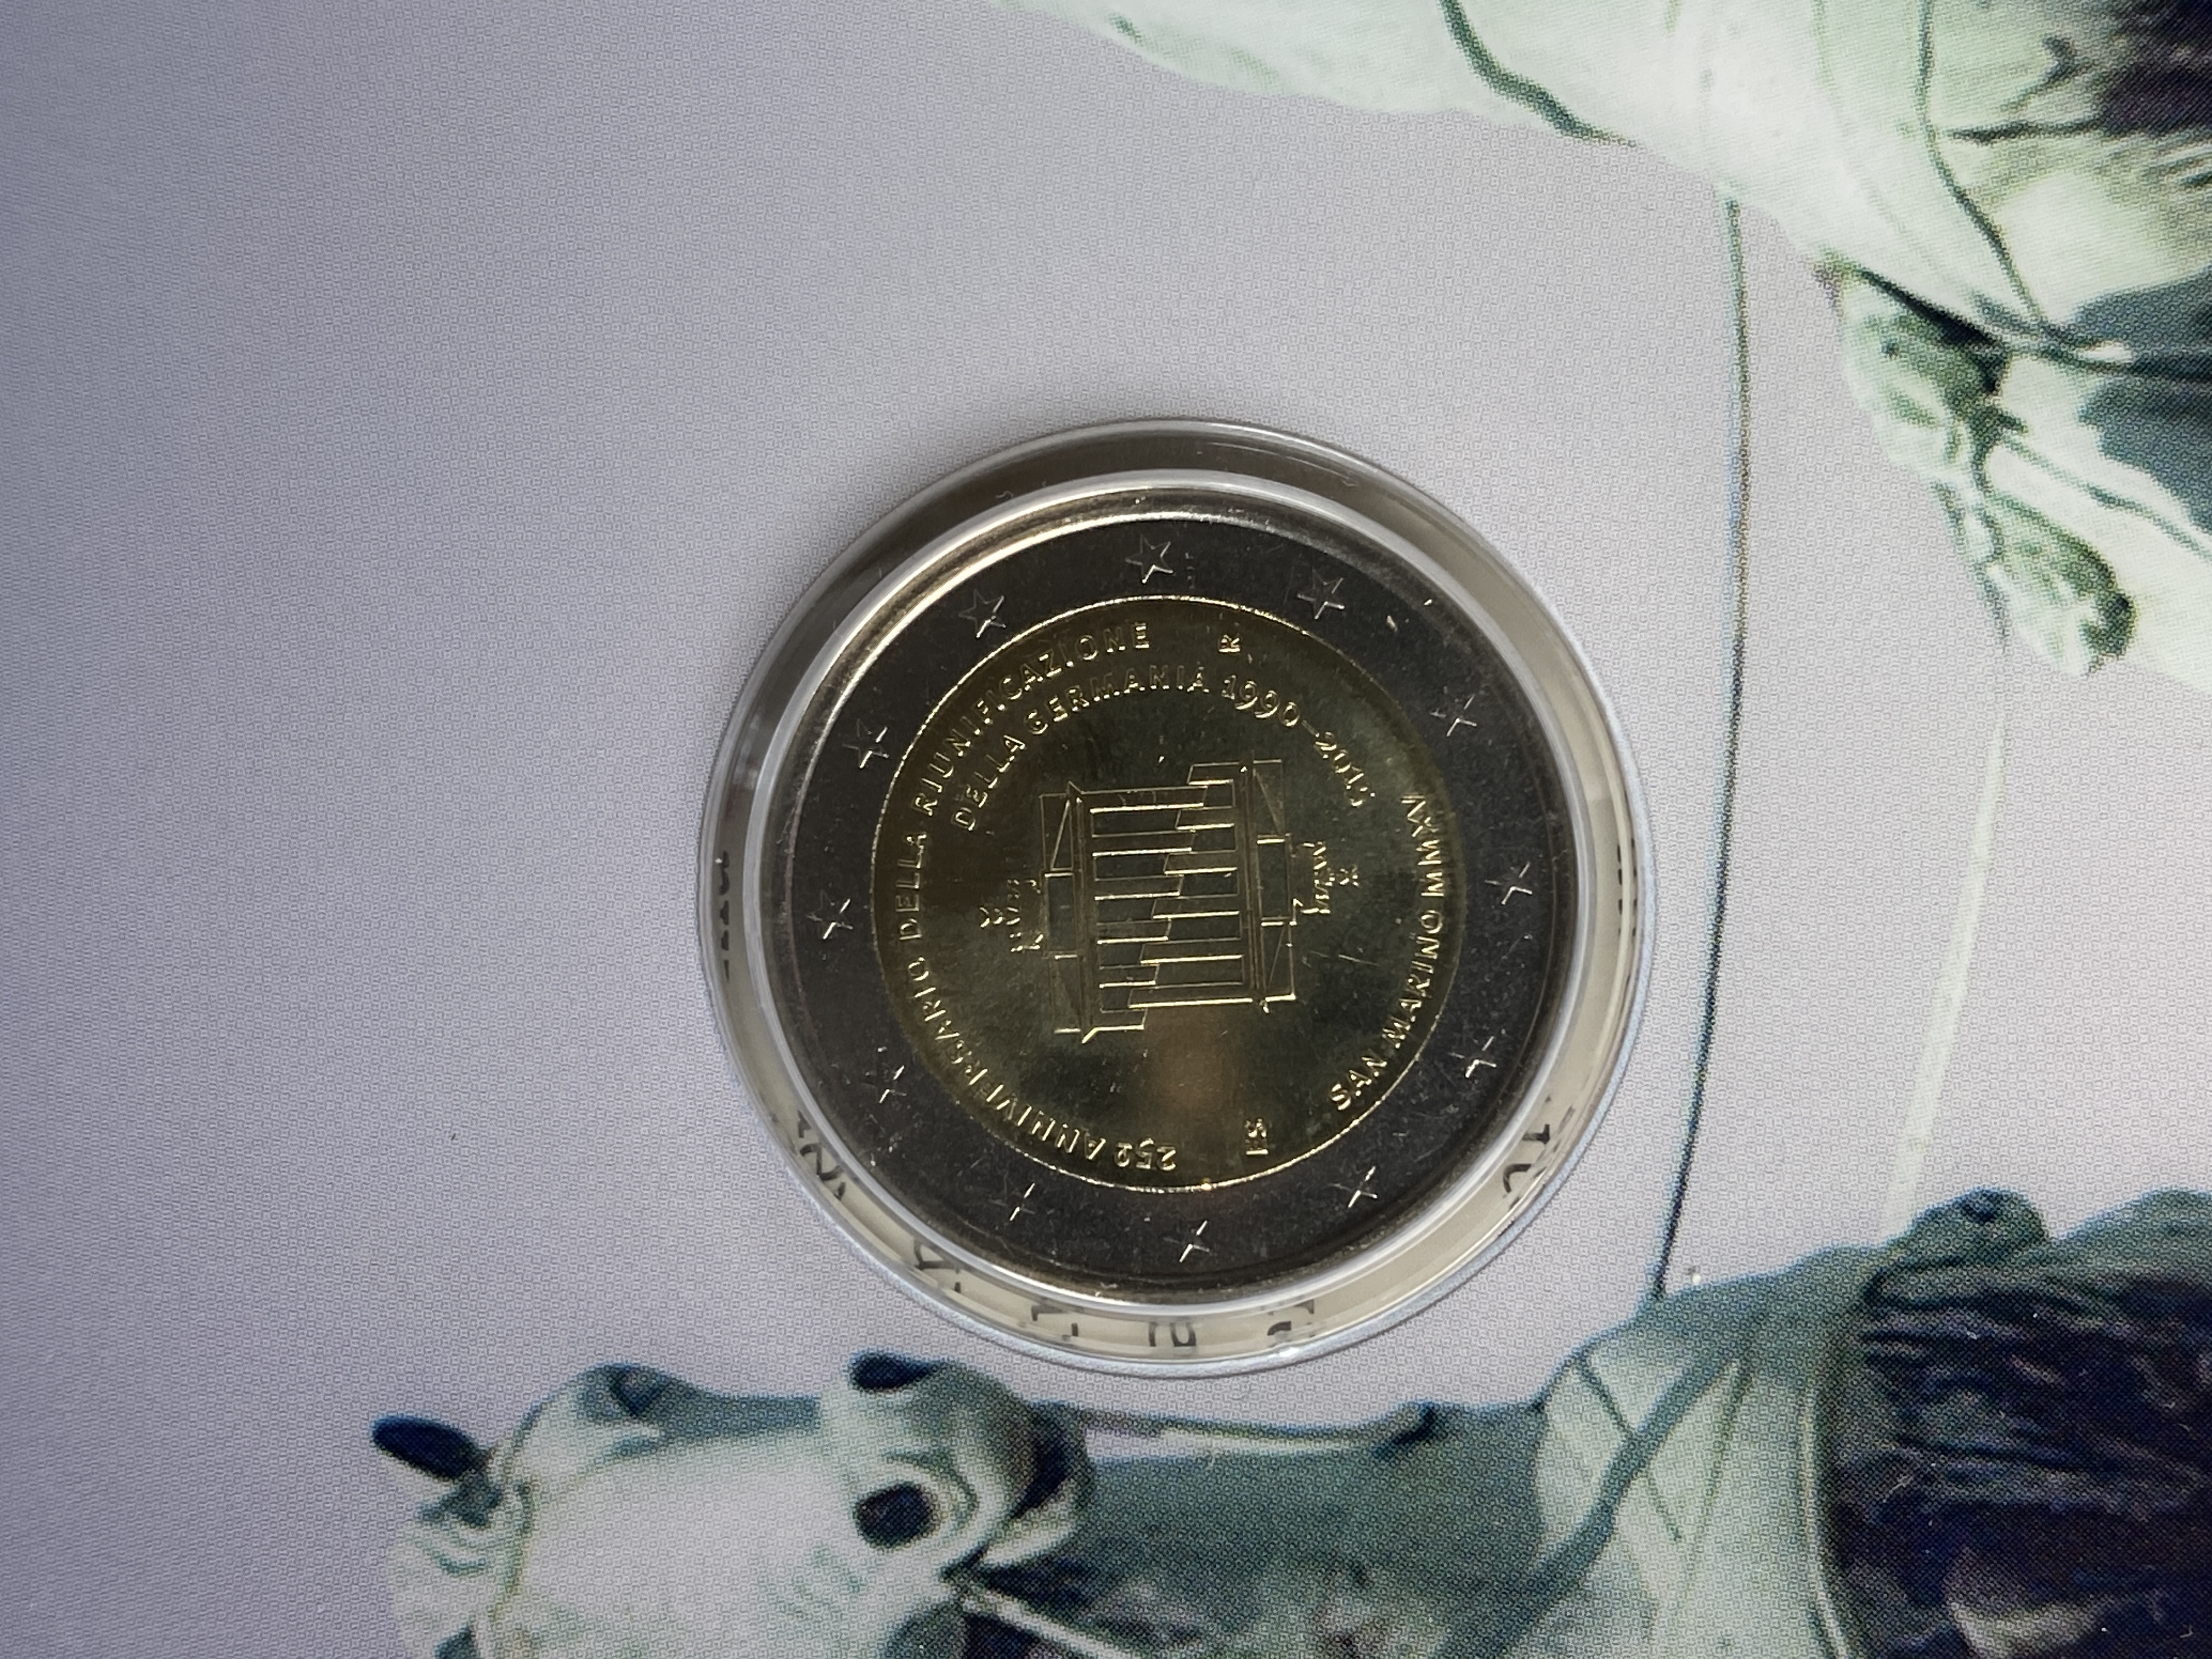 San Marino - 2 Euro Münze „25 Jahre Deutsche Einheit“ 2015